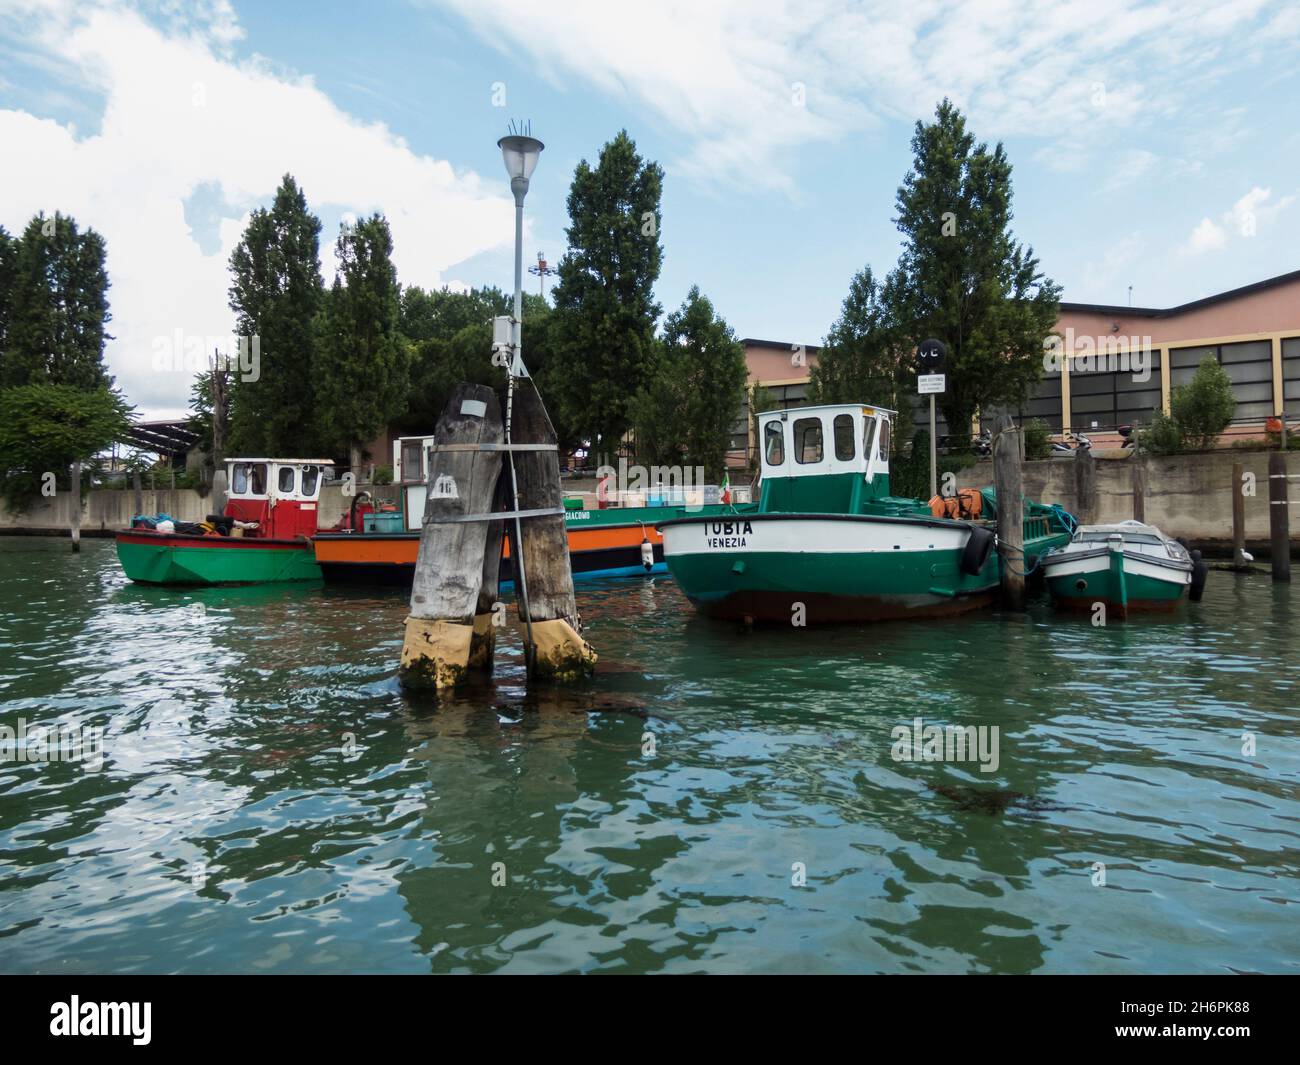 VENECIA, ITALIA - CIRCA MAYO, 2016: Gran Canal y los principios históricos, vista de la hermosa arquitectura y la vida en barco de Venecia, Italia. Foto de stock